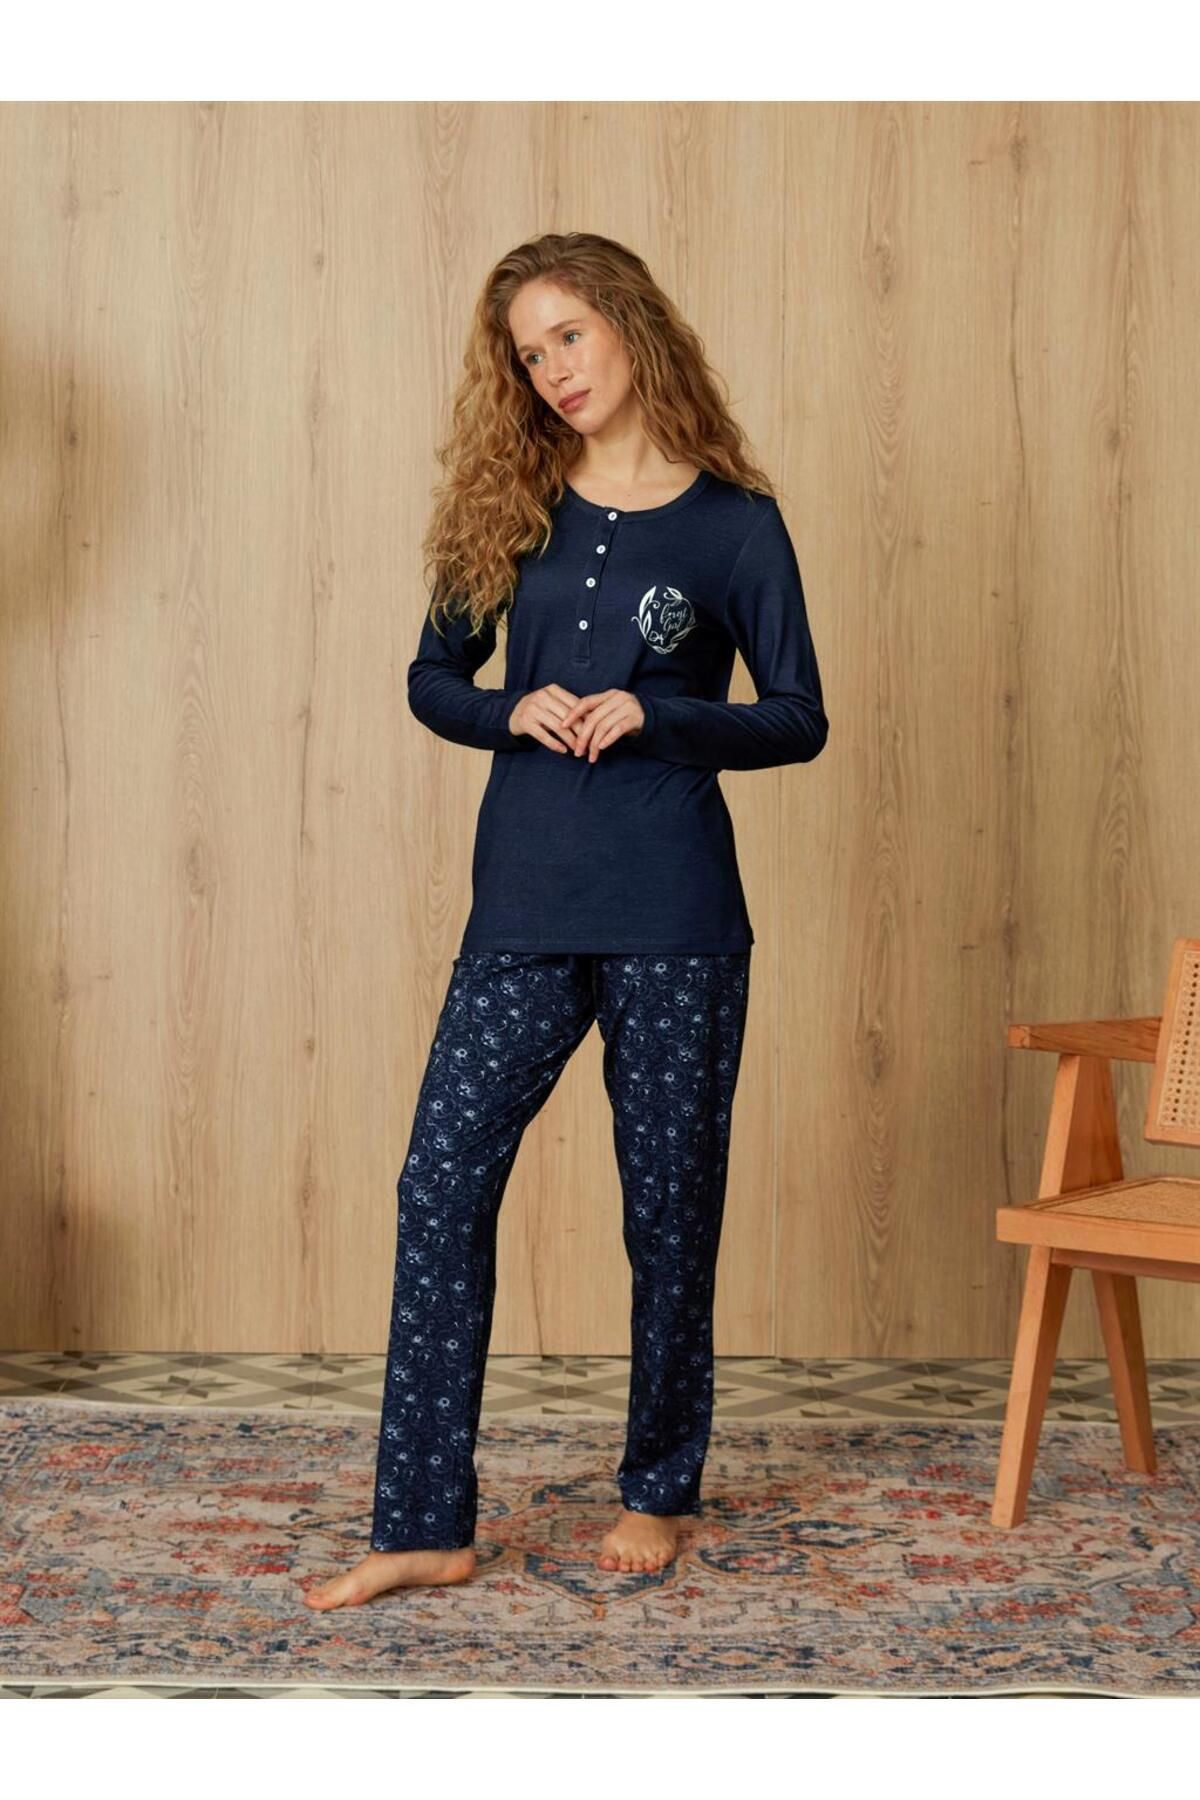 Doreanse Kadın Lacivert Mini Çiçek Desenli T-shirt Pijama Takımı 4084